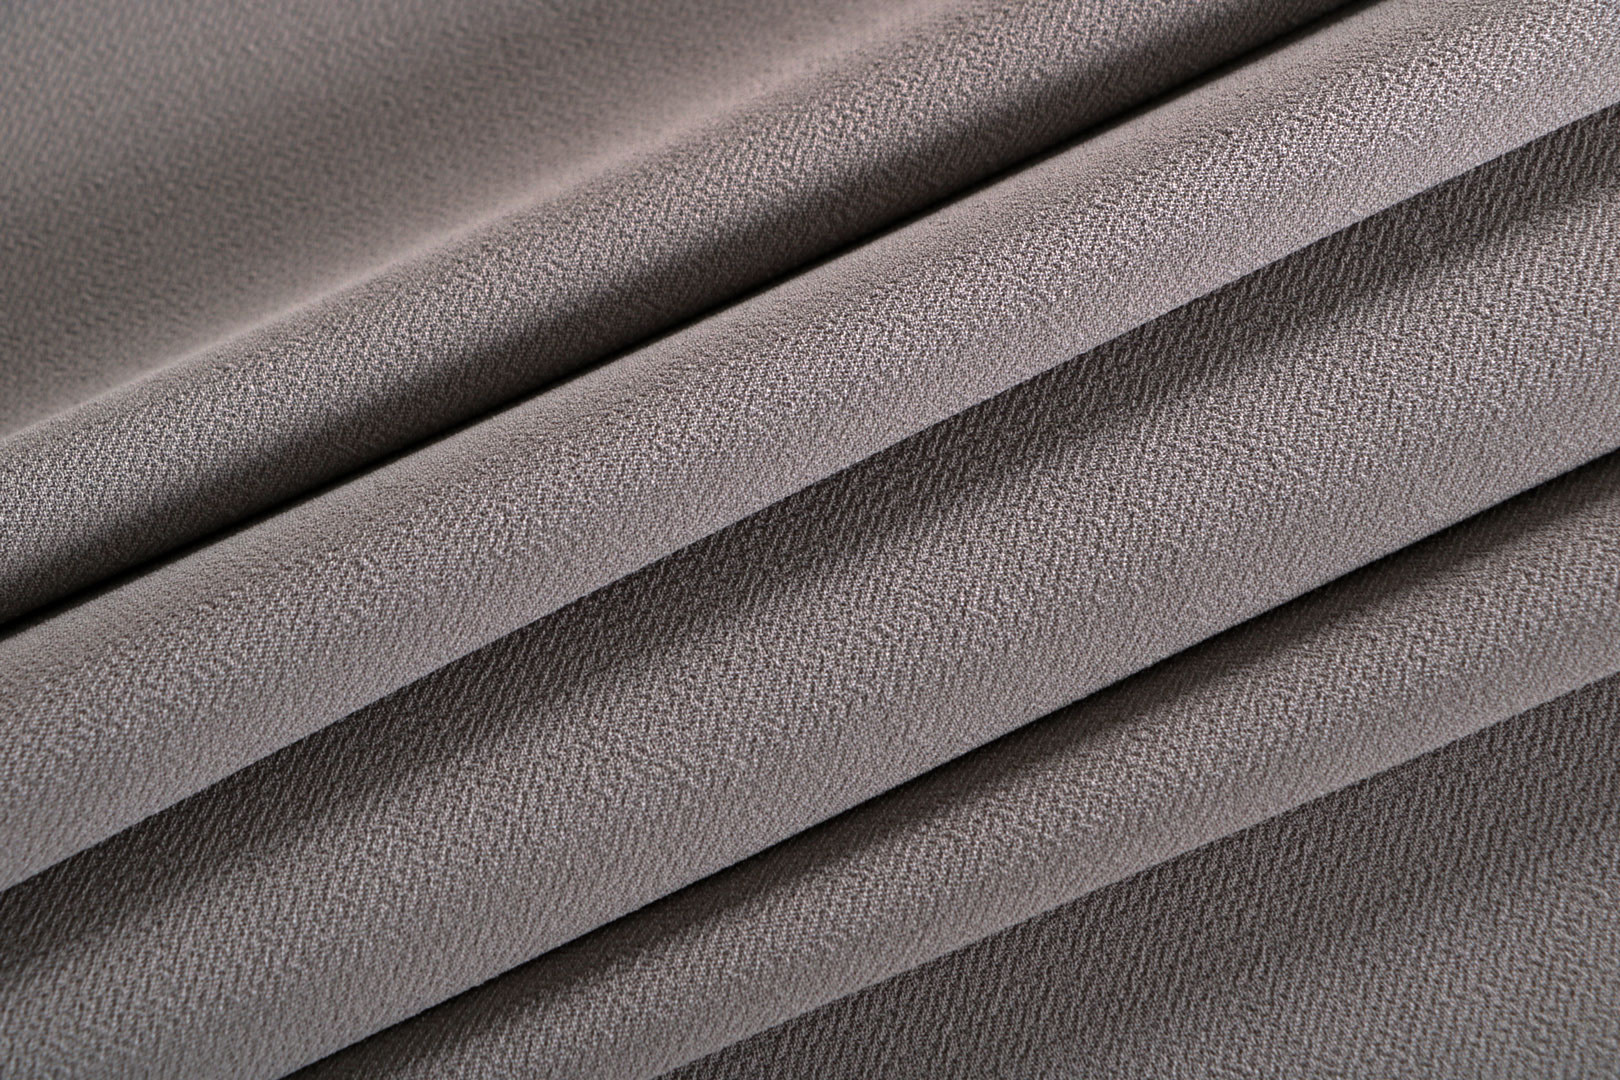 Tissu Microfibre Crêpe Beige Tourterelle en Polyester pour vêtements